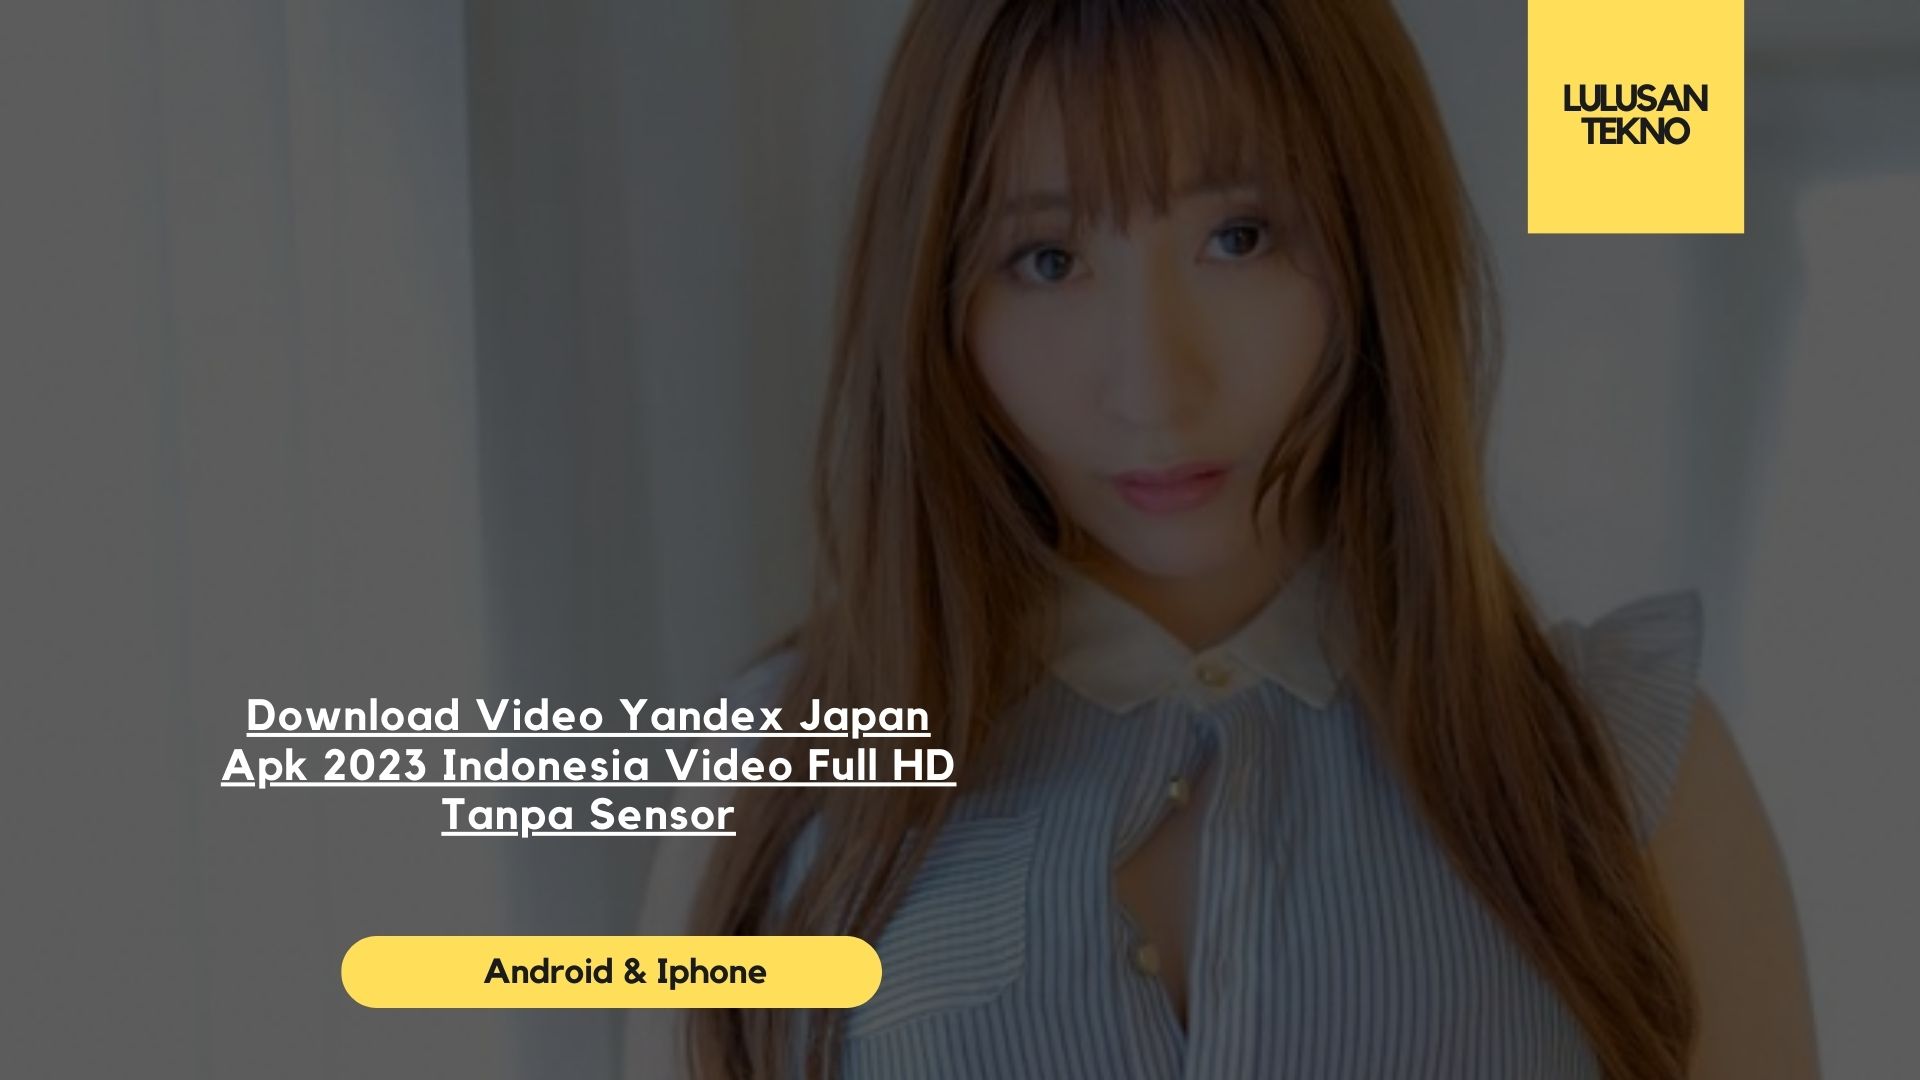 Download Video Yandex Japan Apk 2023 Indonesia Video Full HD Tanpa Sensor